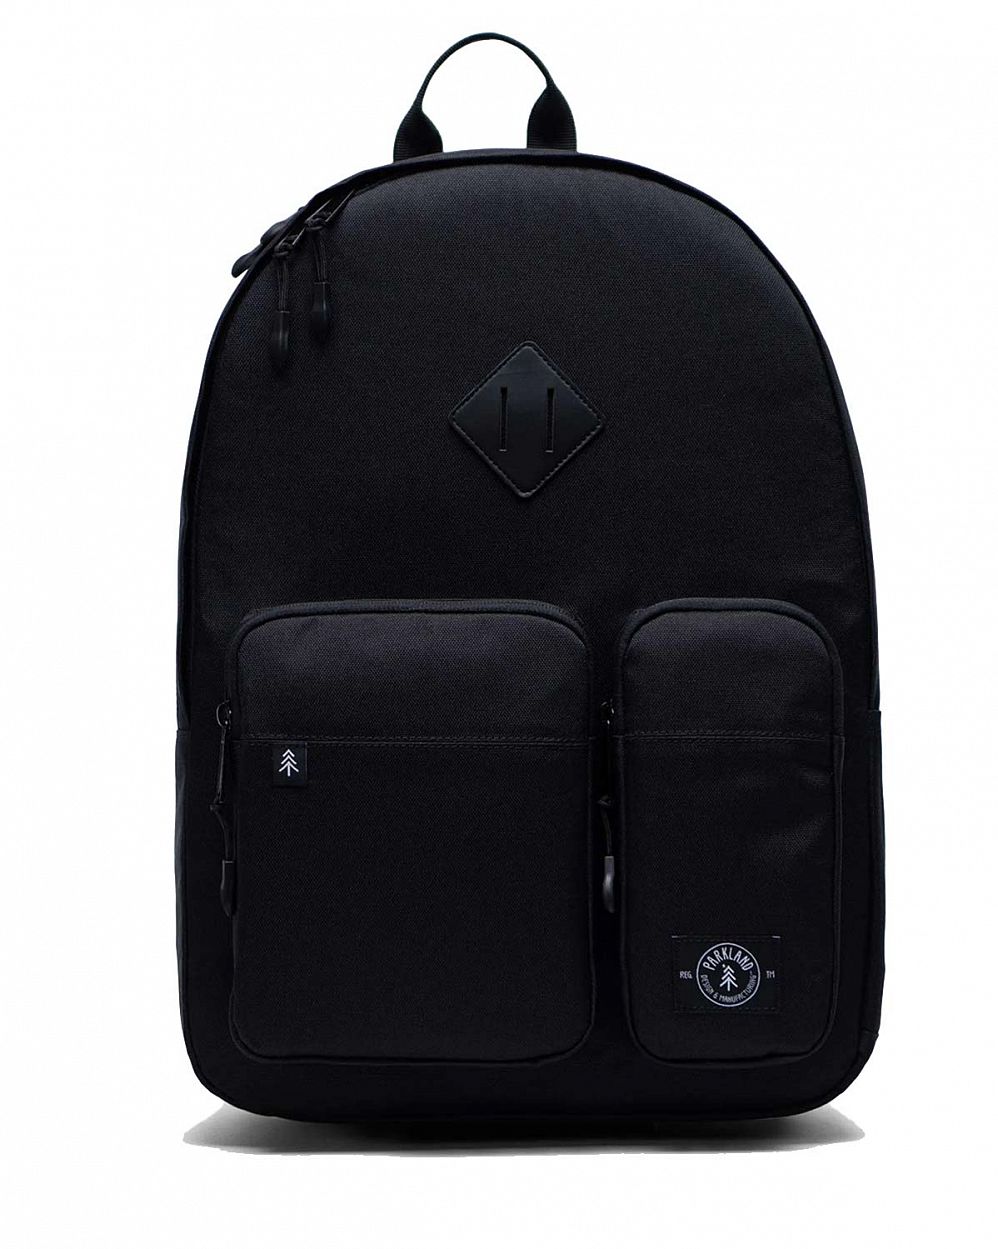 Рюкзак водонепроницаемый для 15 ноутбука Parkland Academy BLACK отзывы